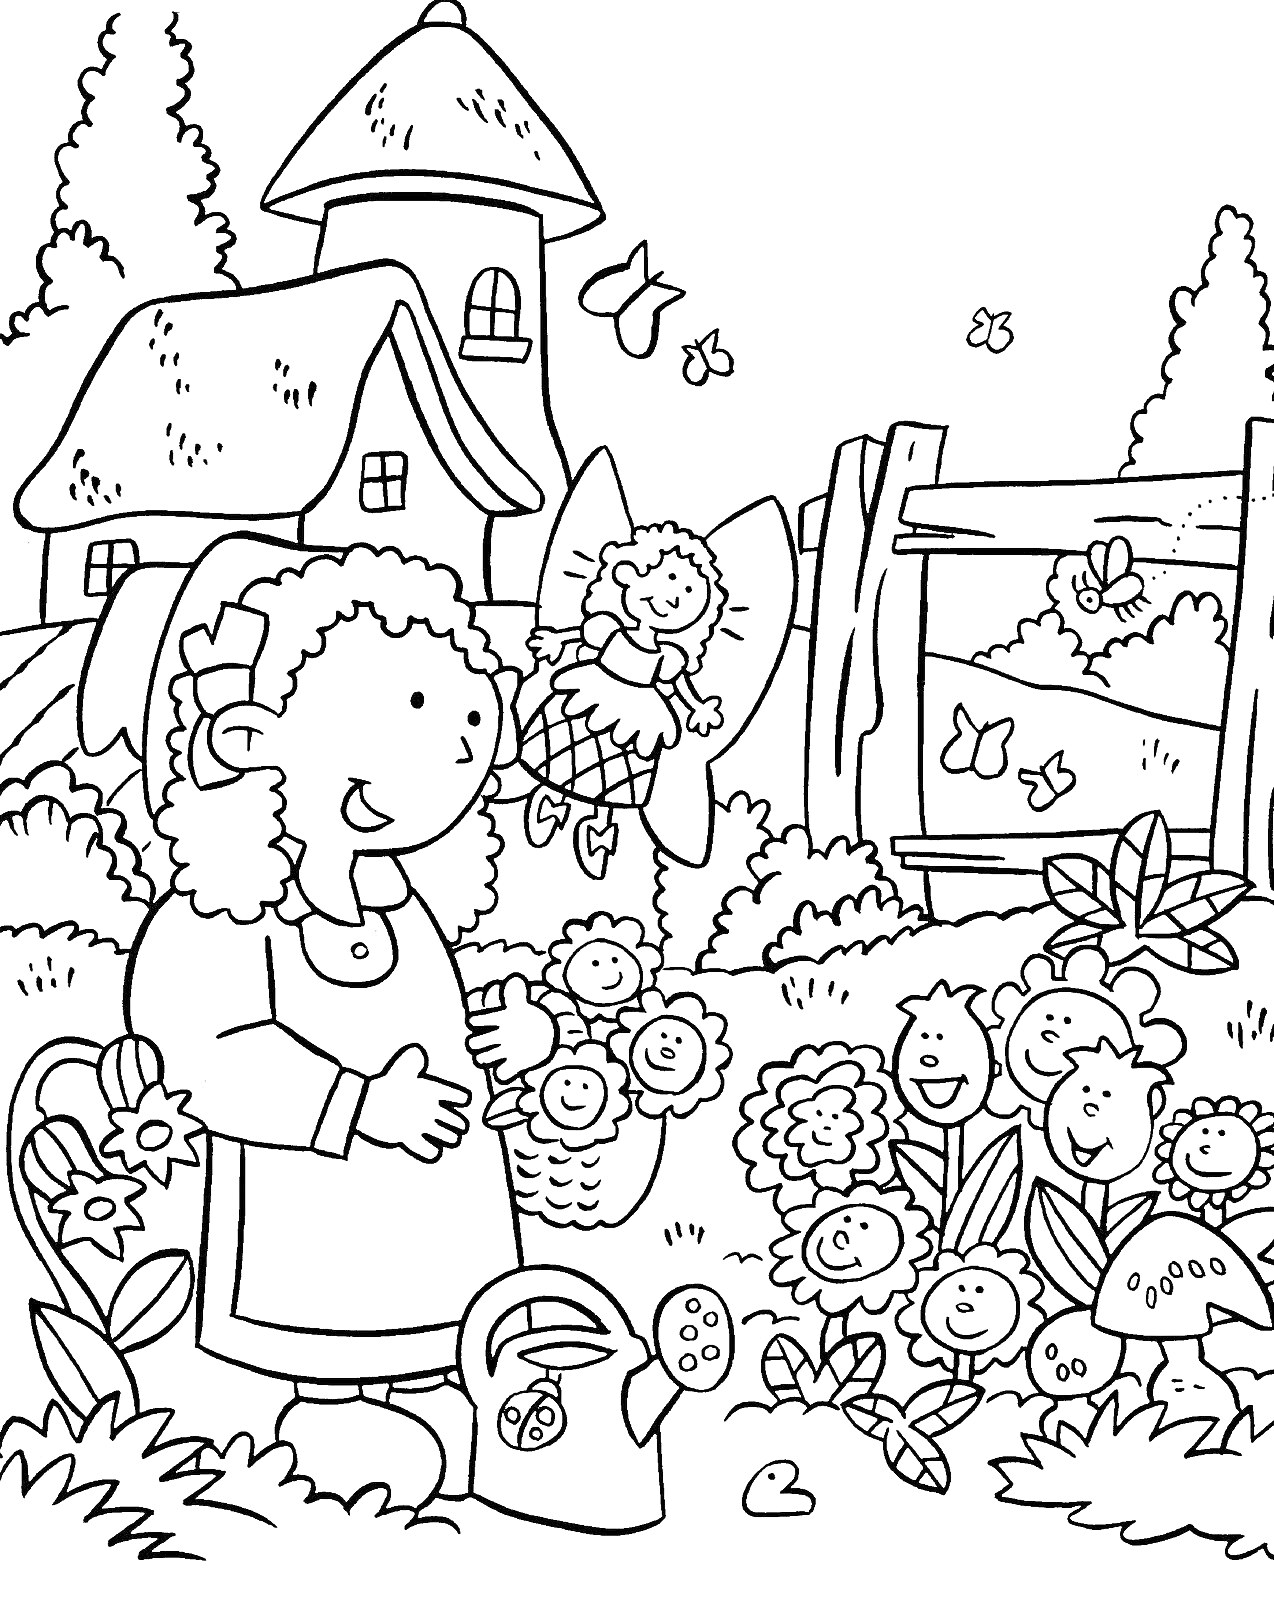 Раскраска Девочка в саду с домом, забором, цветами и феей